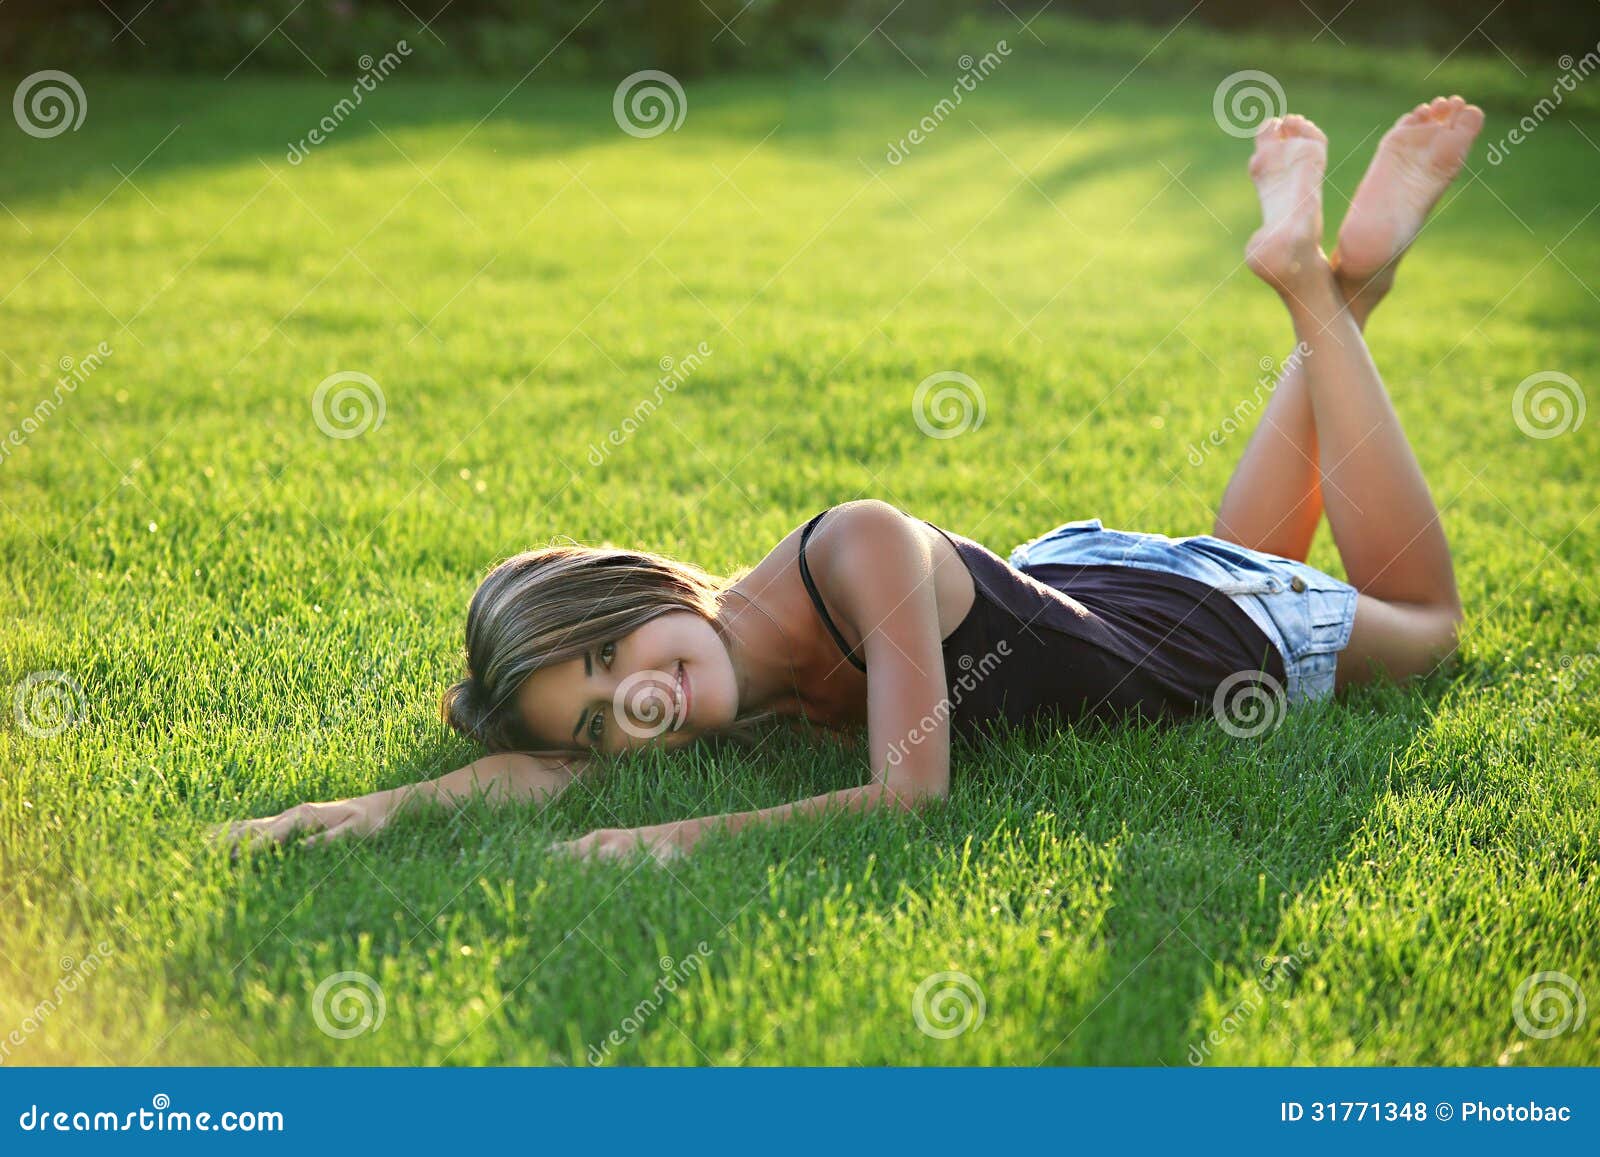 Спать с поднятыми ногами. Девушка лежит на траве. Девушка лежит на лужайке. Девушки лежат на траве босиком. Подросток лежит на траве.